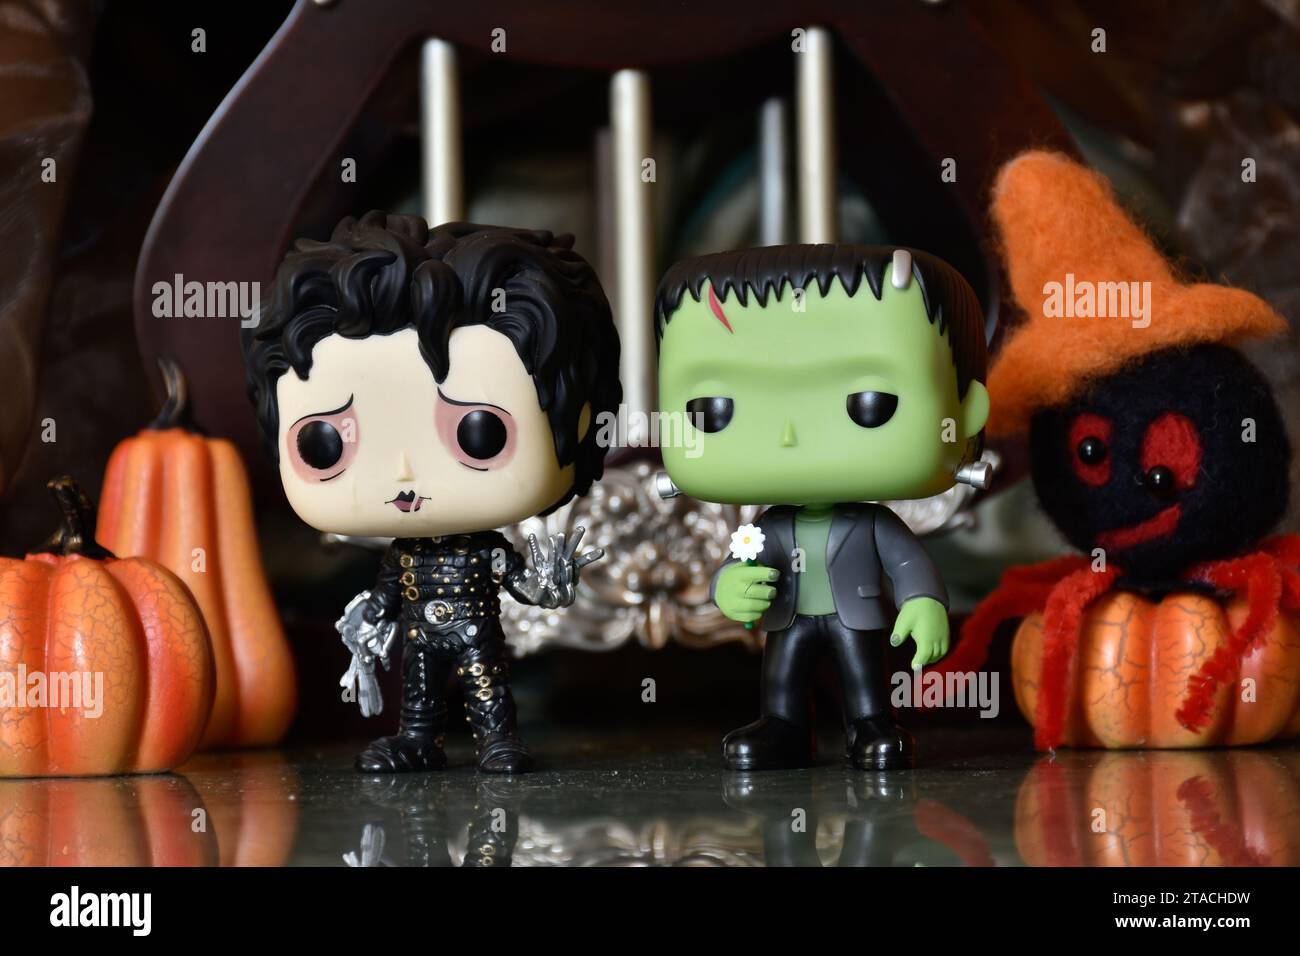 Funko Pop figurines d'action de personnages d'horreur populaires Frankenstein monstre et Edward Scissorhands. Ambiance Halloween, décor de citrouilles, araignée jouet. Banque D'Images